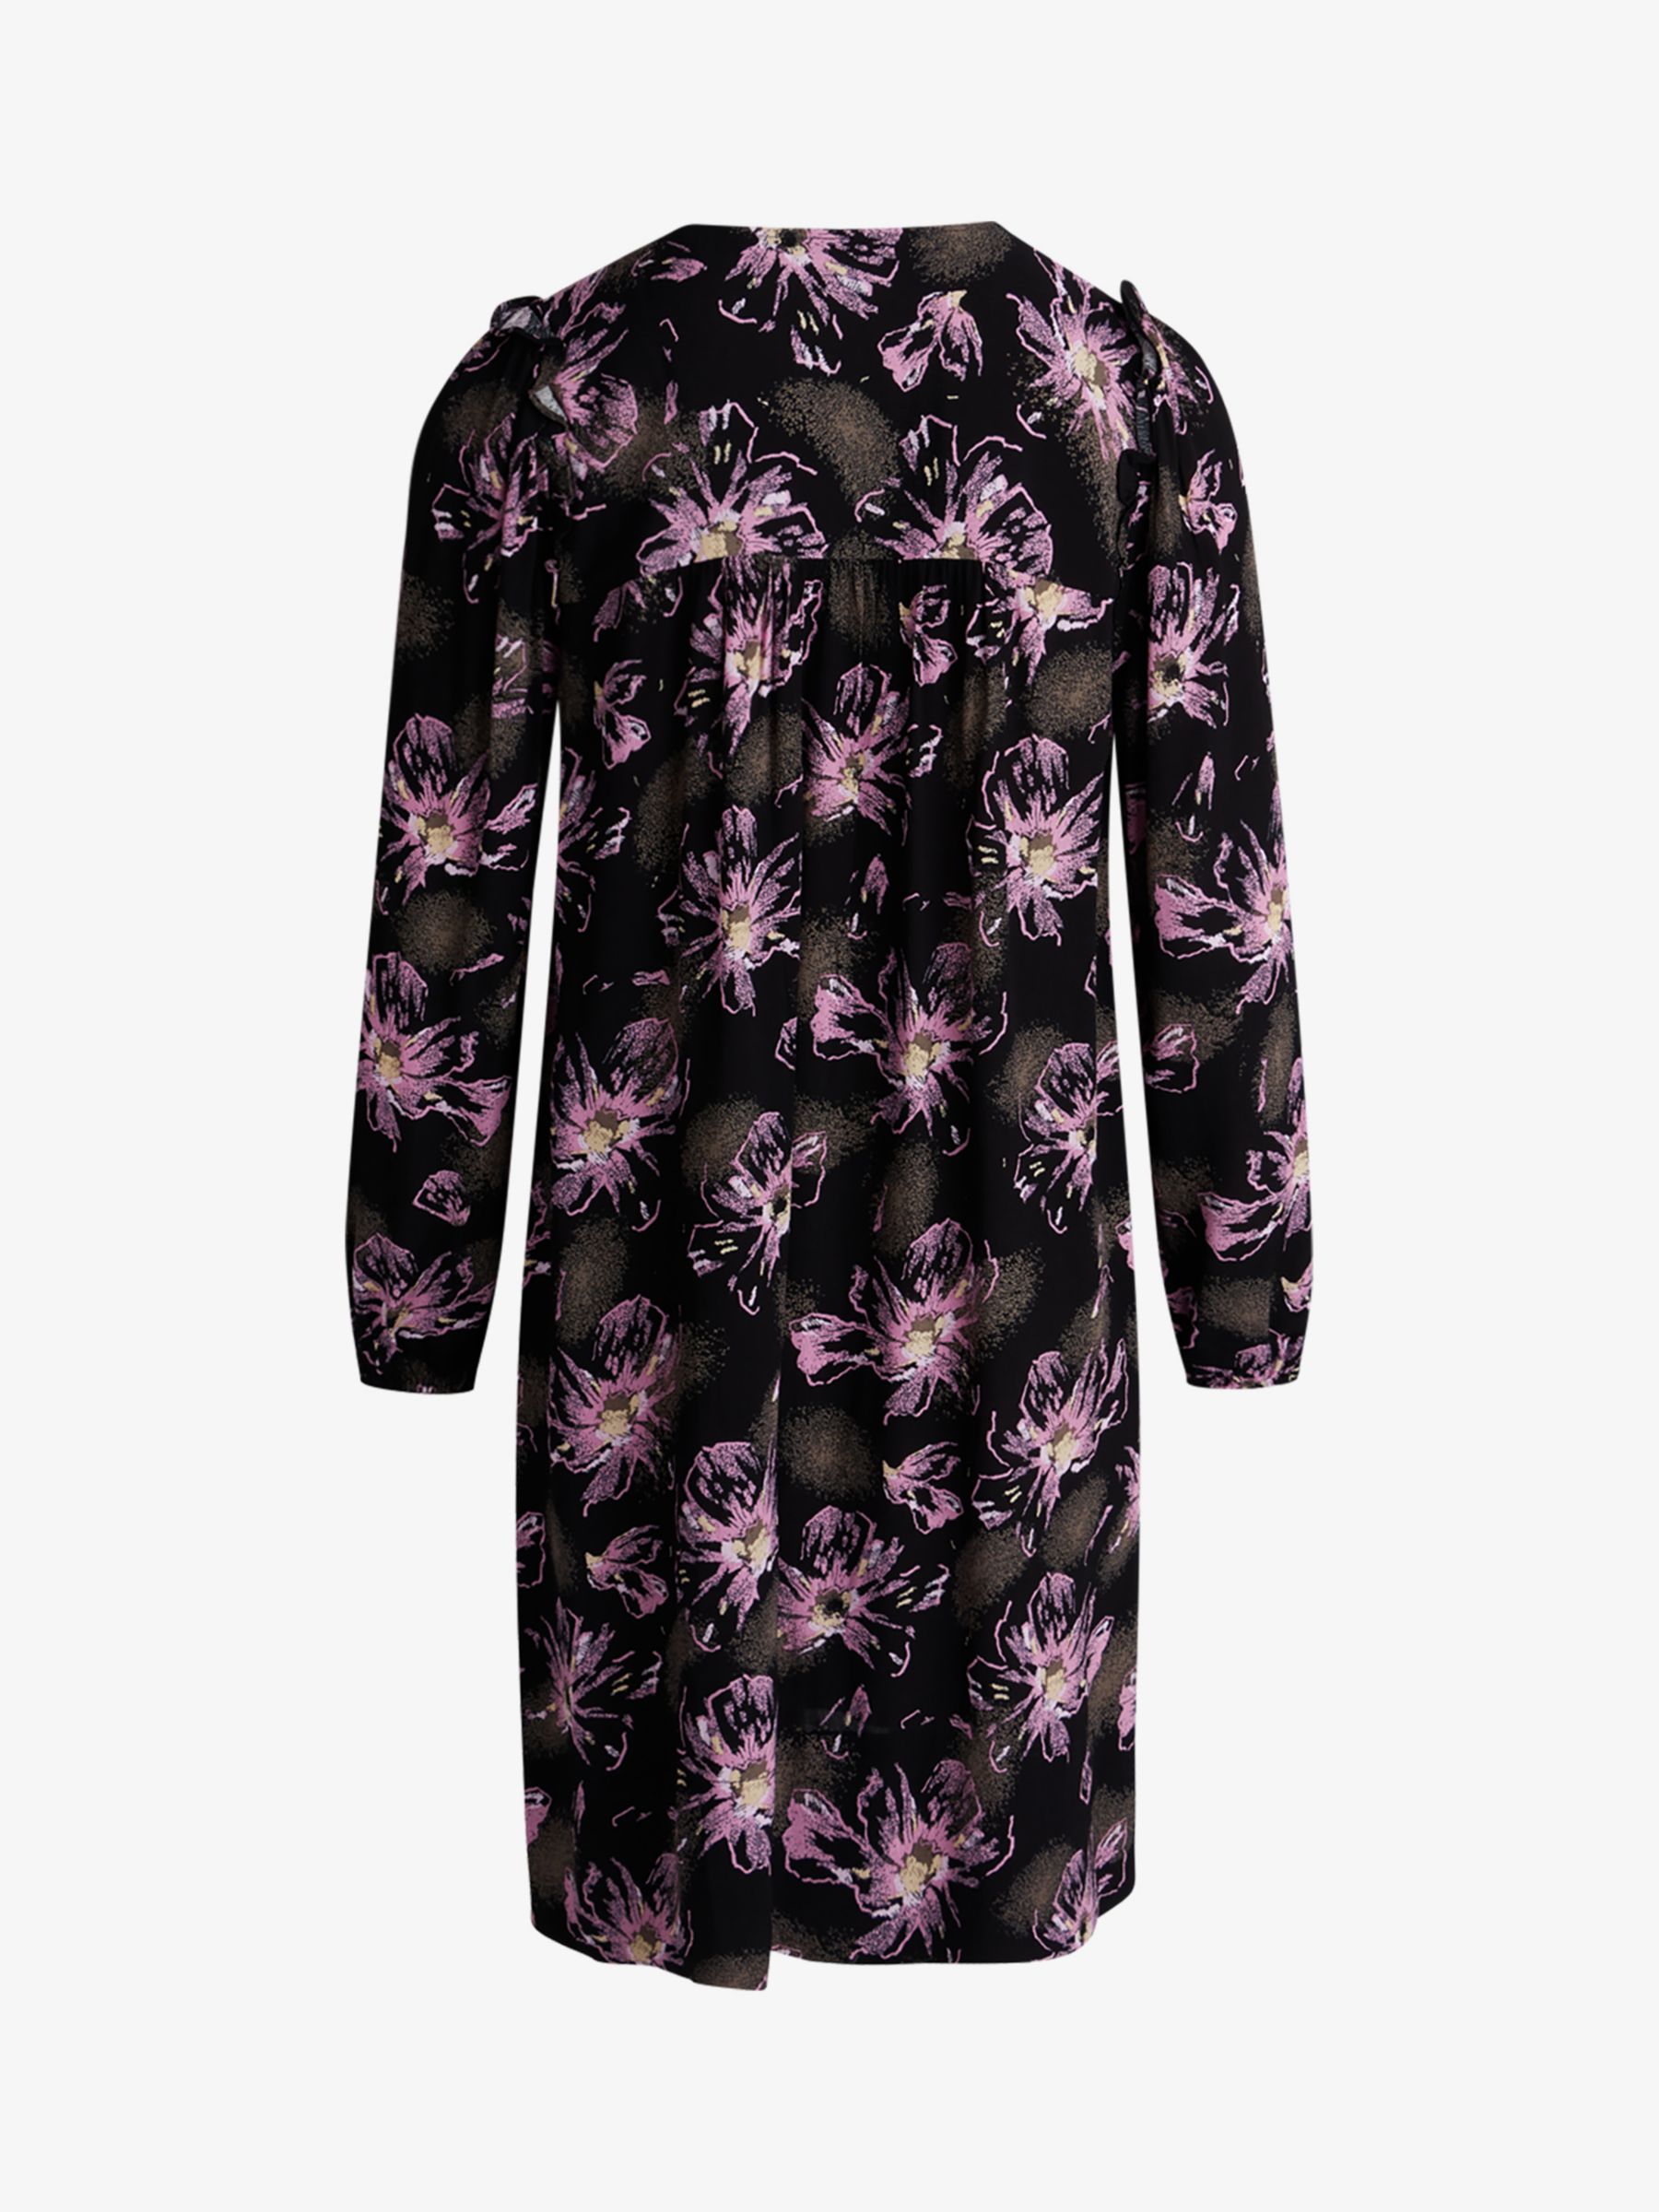 Noa Noa Liva Floral Print Mini Dress, Black/Purple, 6